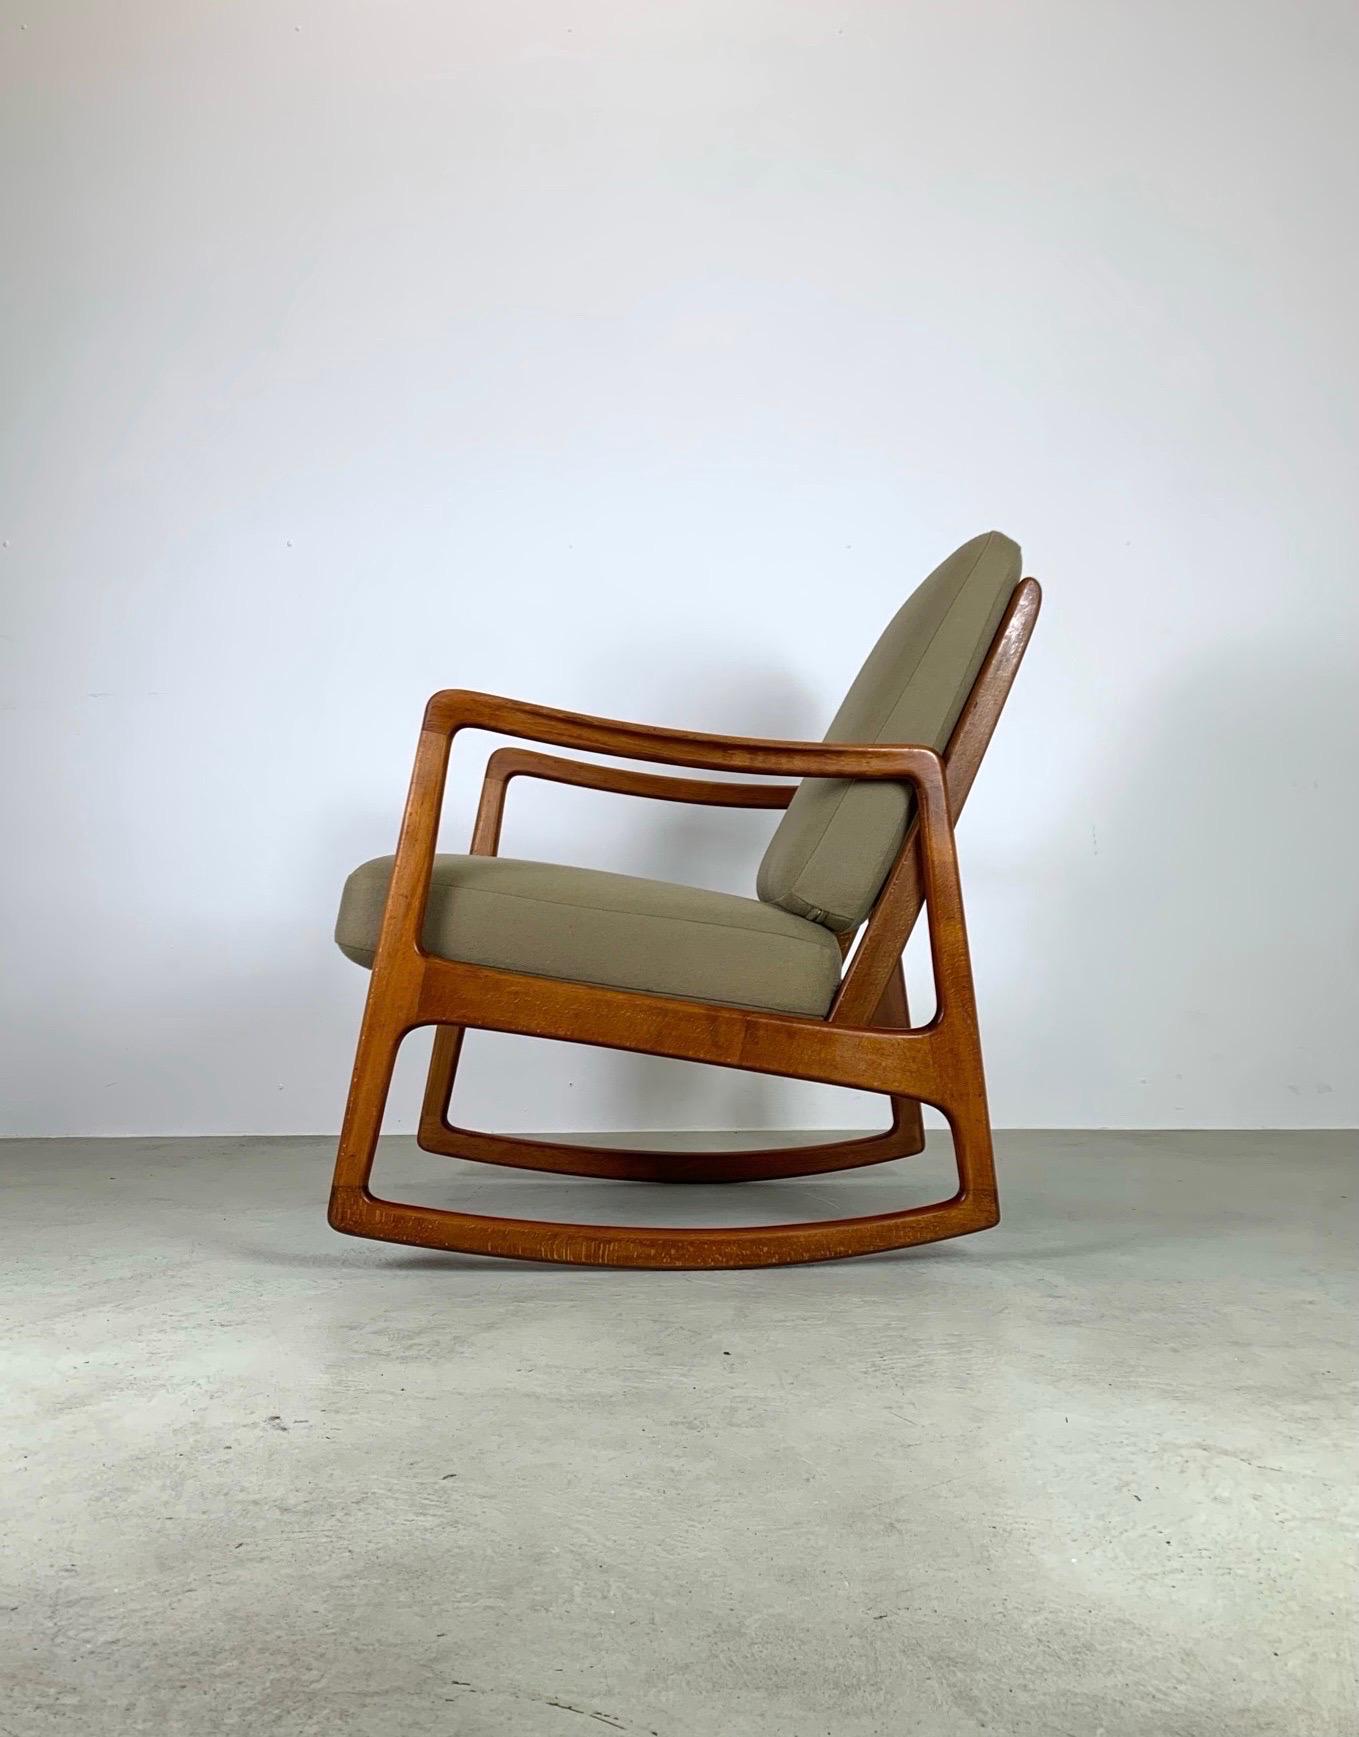 Rare fauteuil à bascule du milieu du siècle conçu par le professeur danois Ole Wanscher. Fabriqué au Danemark par France & Søn dans les années 1950. Il porte la marque du fabricant et se compose d'un cadre robuste en bois de teck, d'un dossier